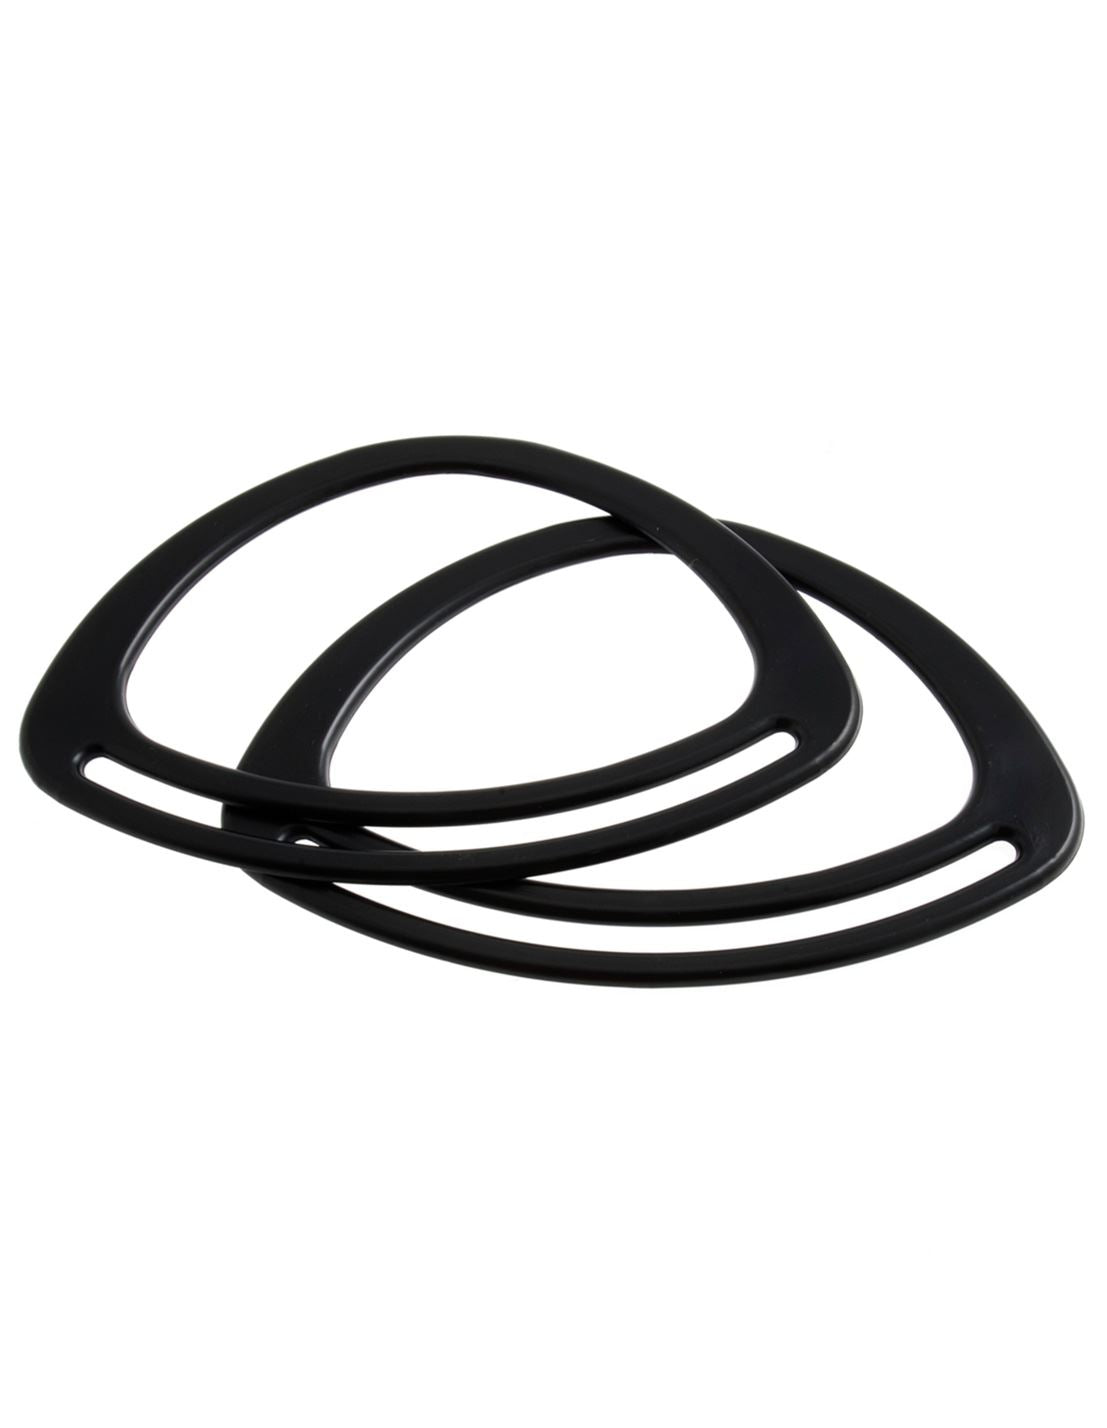 Trimits black graphite (CFH2/GRP) plastic oval bag handles - 20cm